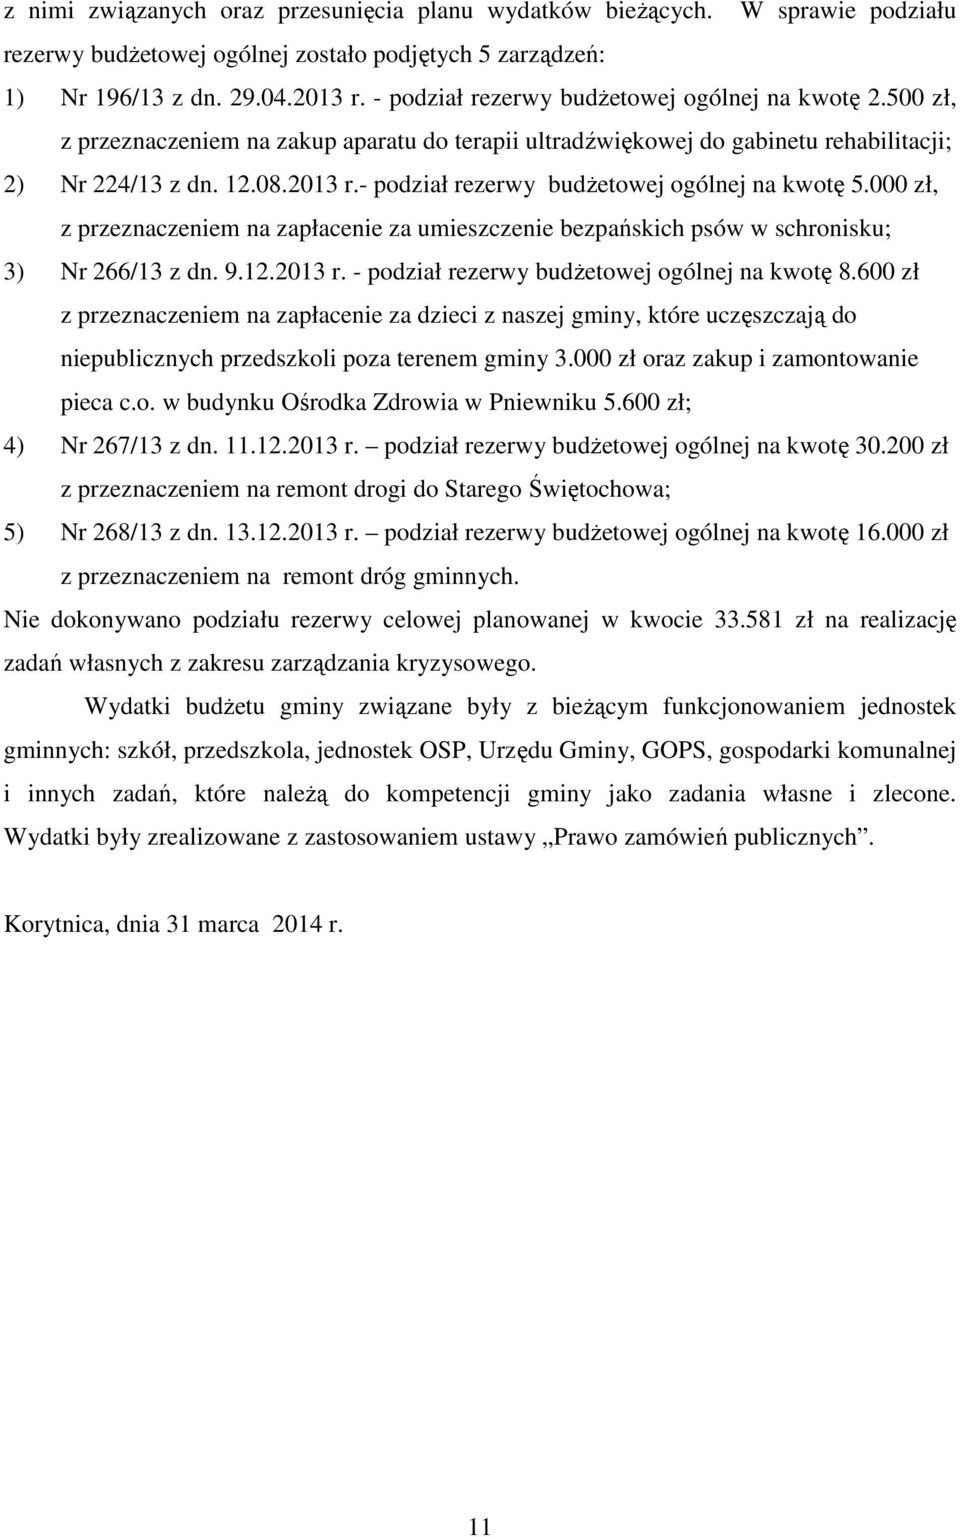 - podział rezerwy budżetowej ogólnej na kwotę 5.000 zł, z przeznaczeniem na zapłacenie za umieszczenie bezpańskich psów w schronisku; 3) Nr 266/13 z dn. 9.12.2013 r.